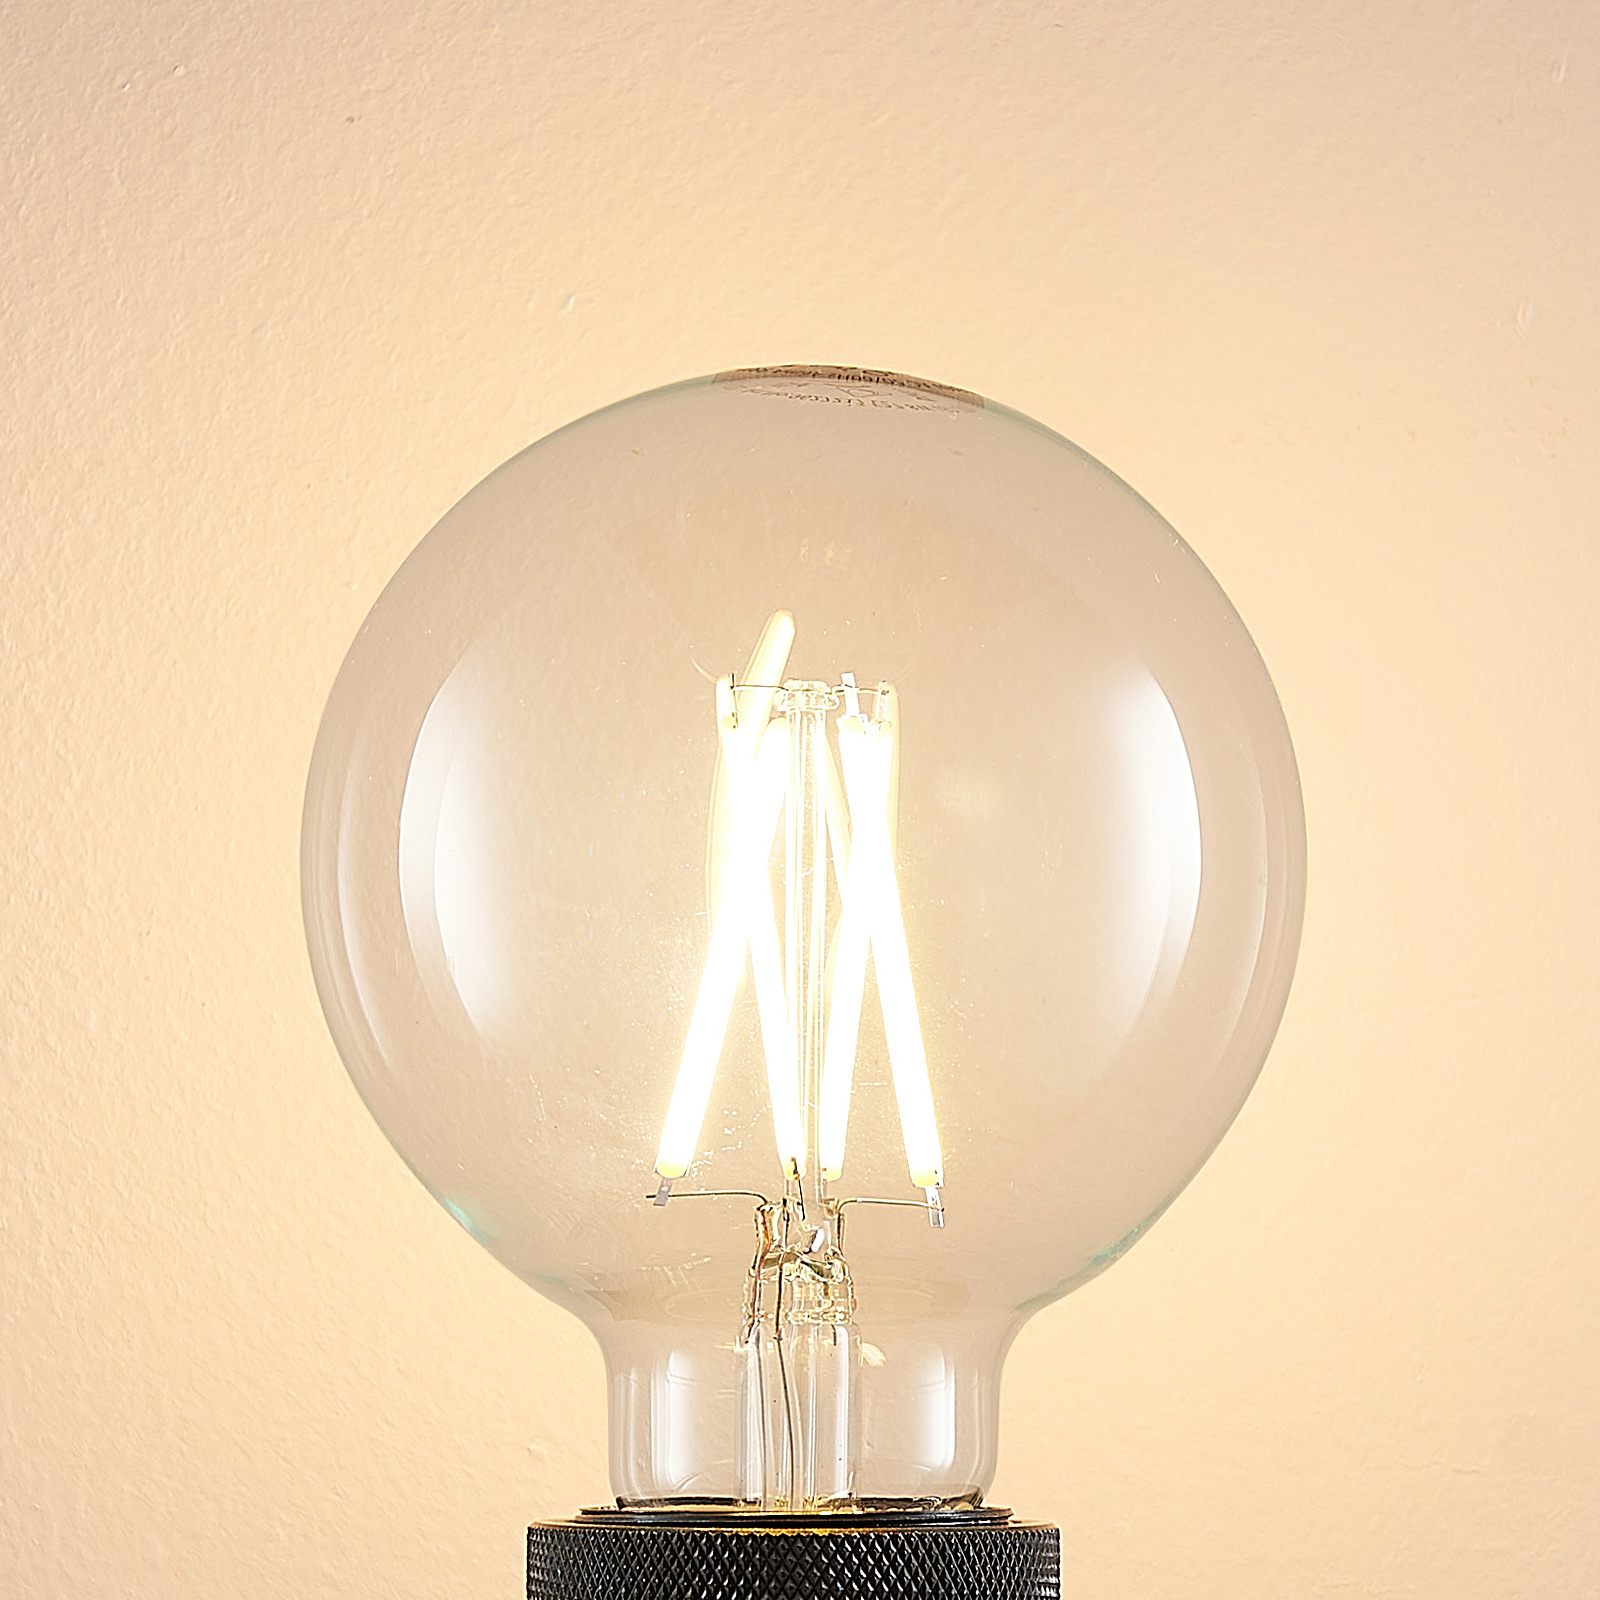 LED-Lampe E27 8W 2.700K G95 Globe, Filament, klar